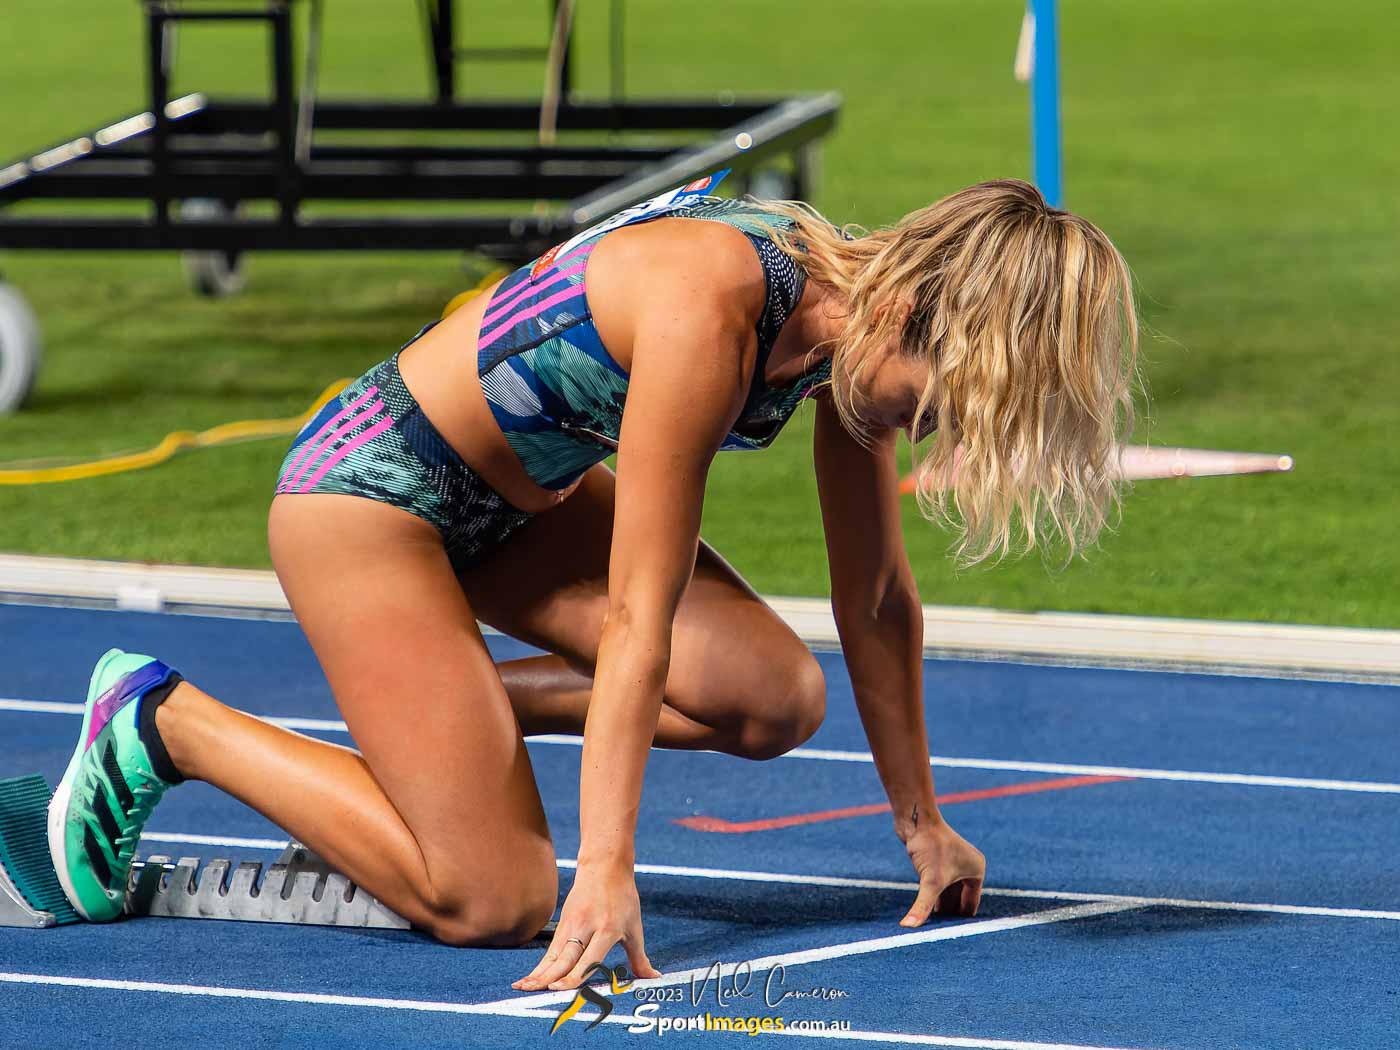 Isabella Guthrie, Women's 400m Hurdles